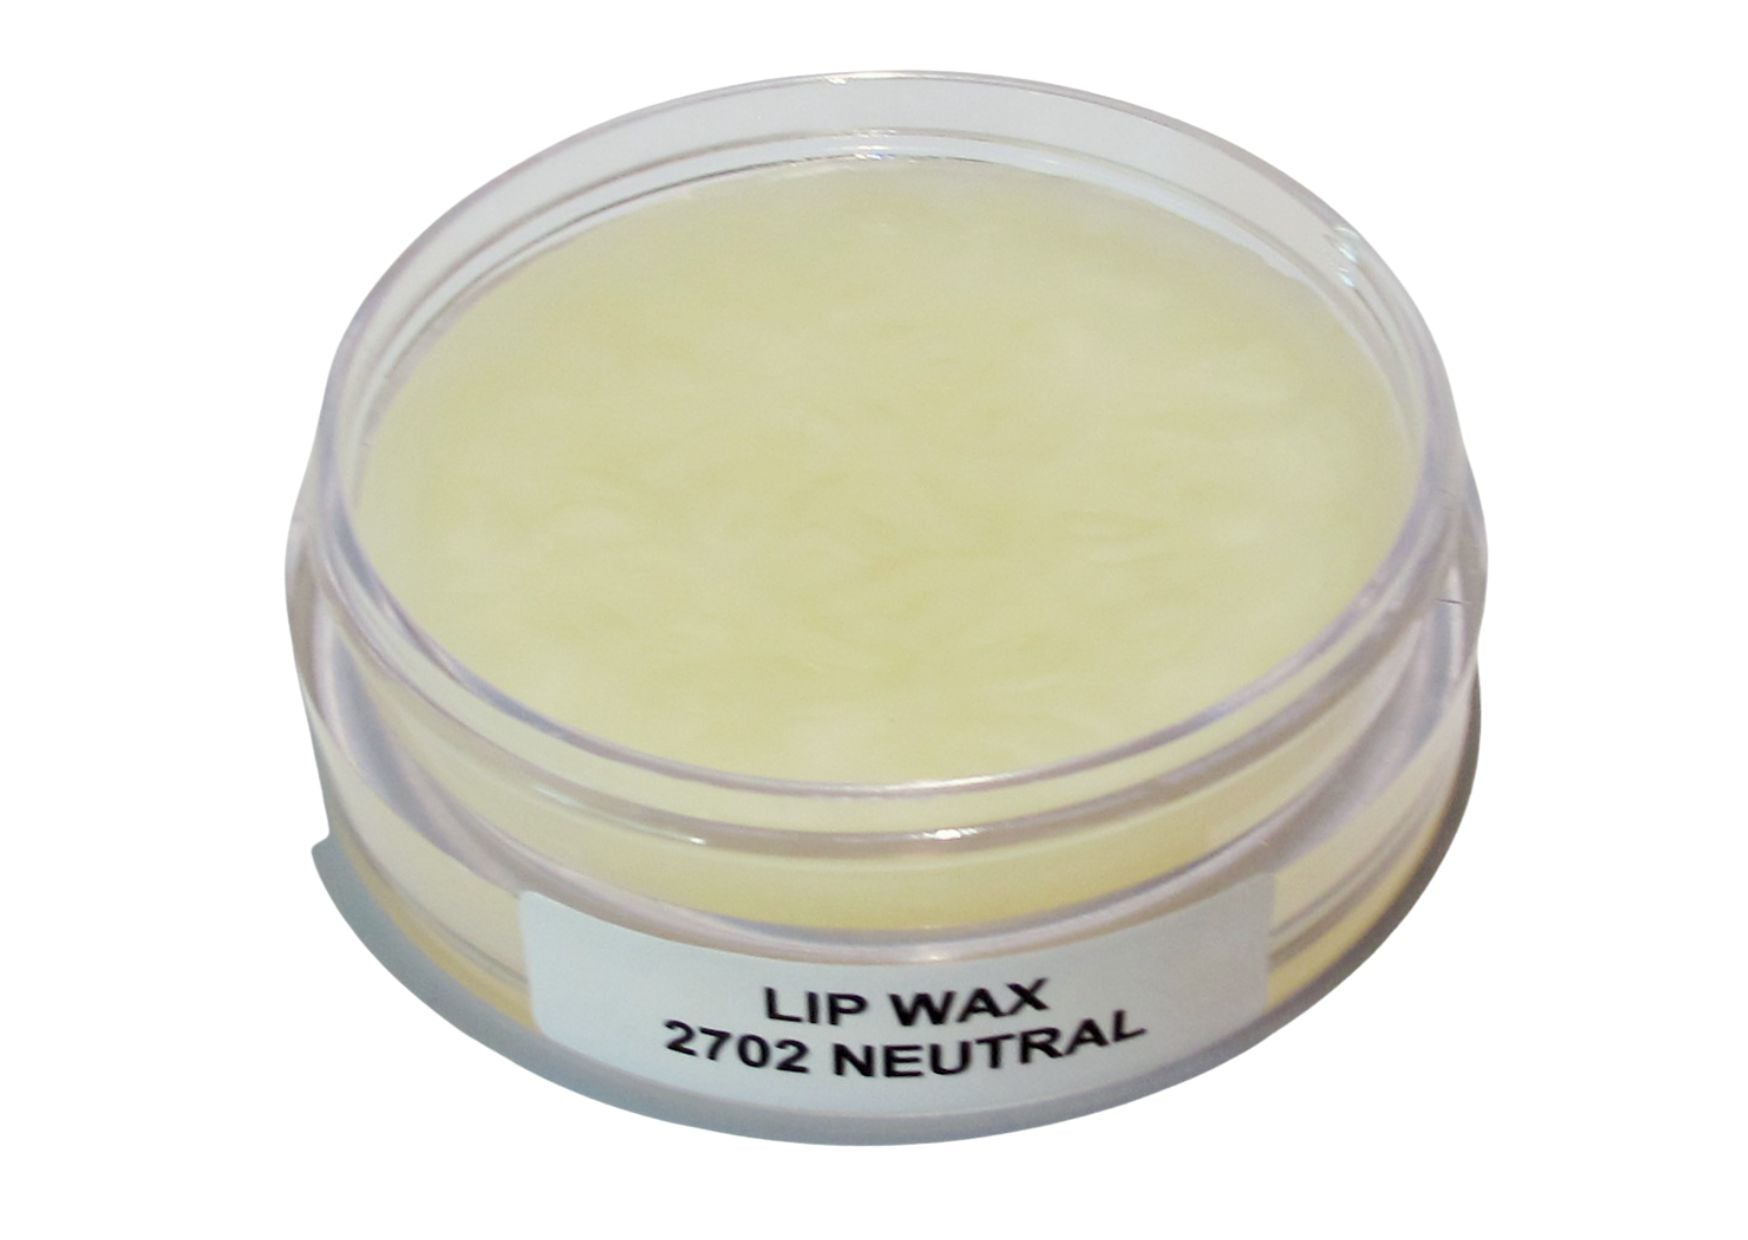 Lip wax soft neutral